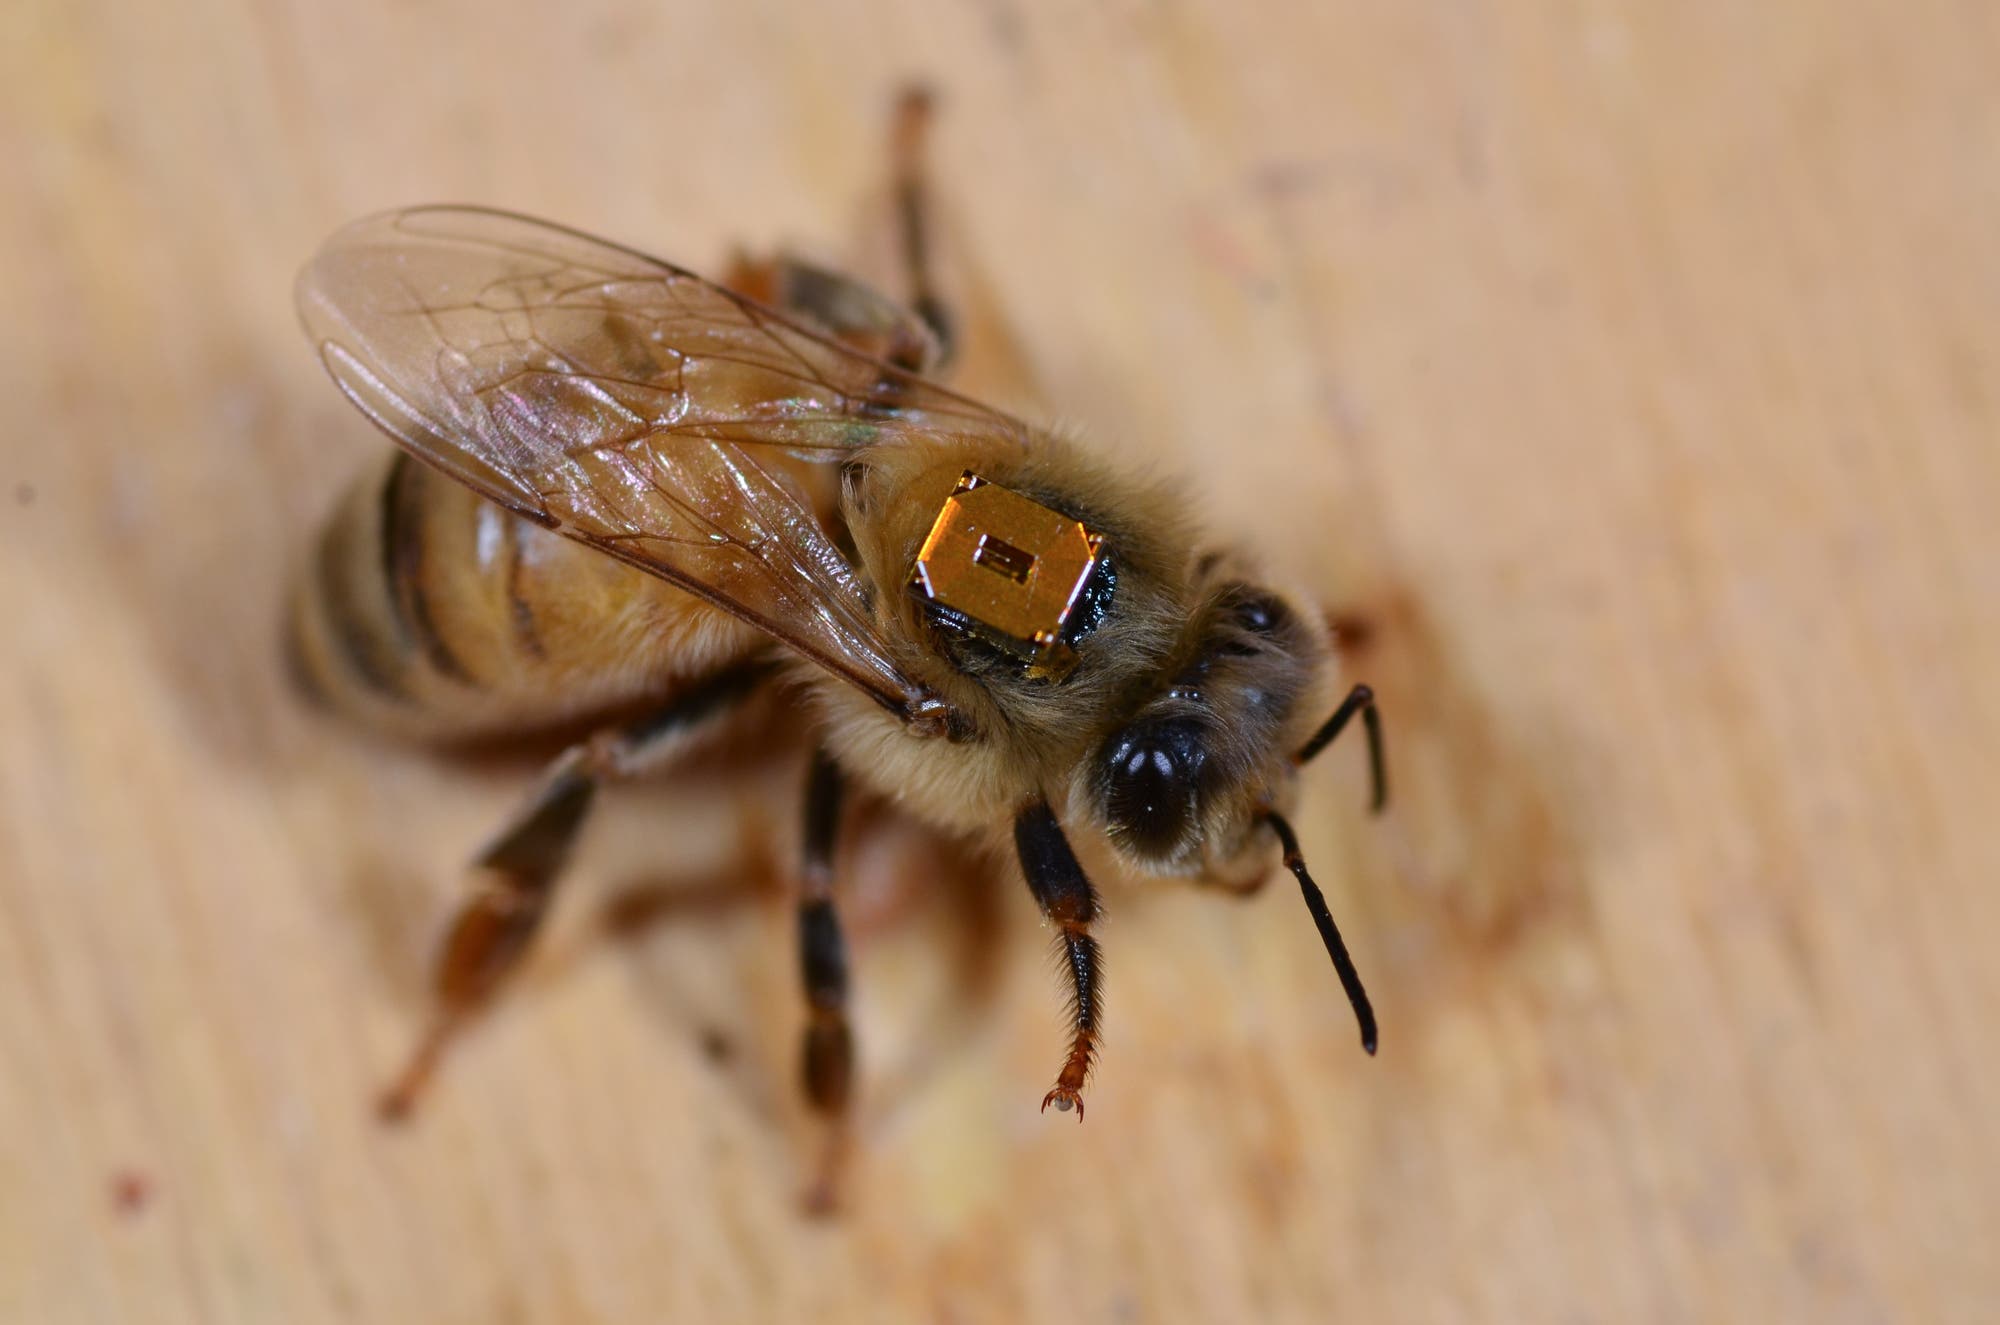 Um aufzuzeichnen, wann die Honigbienen den Stock verlassen, stattete das kanadische Forschungsteam sie mit RFID-Chips aus.  